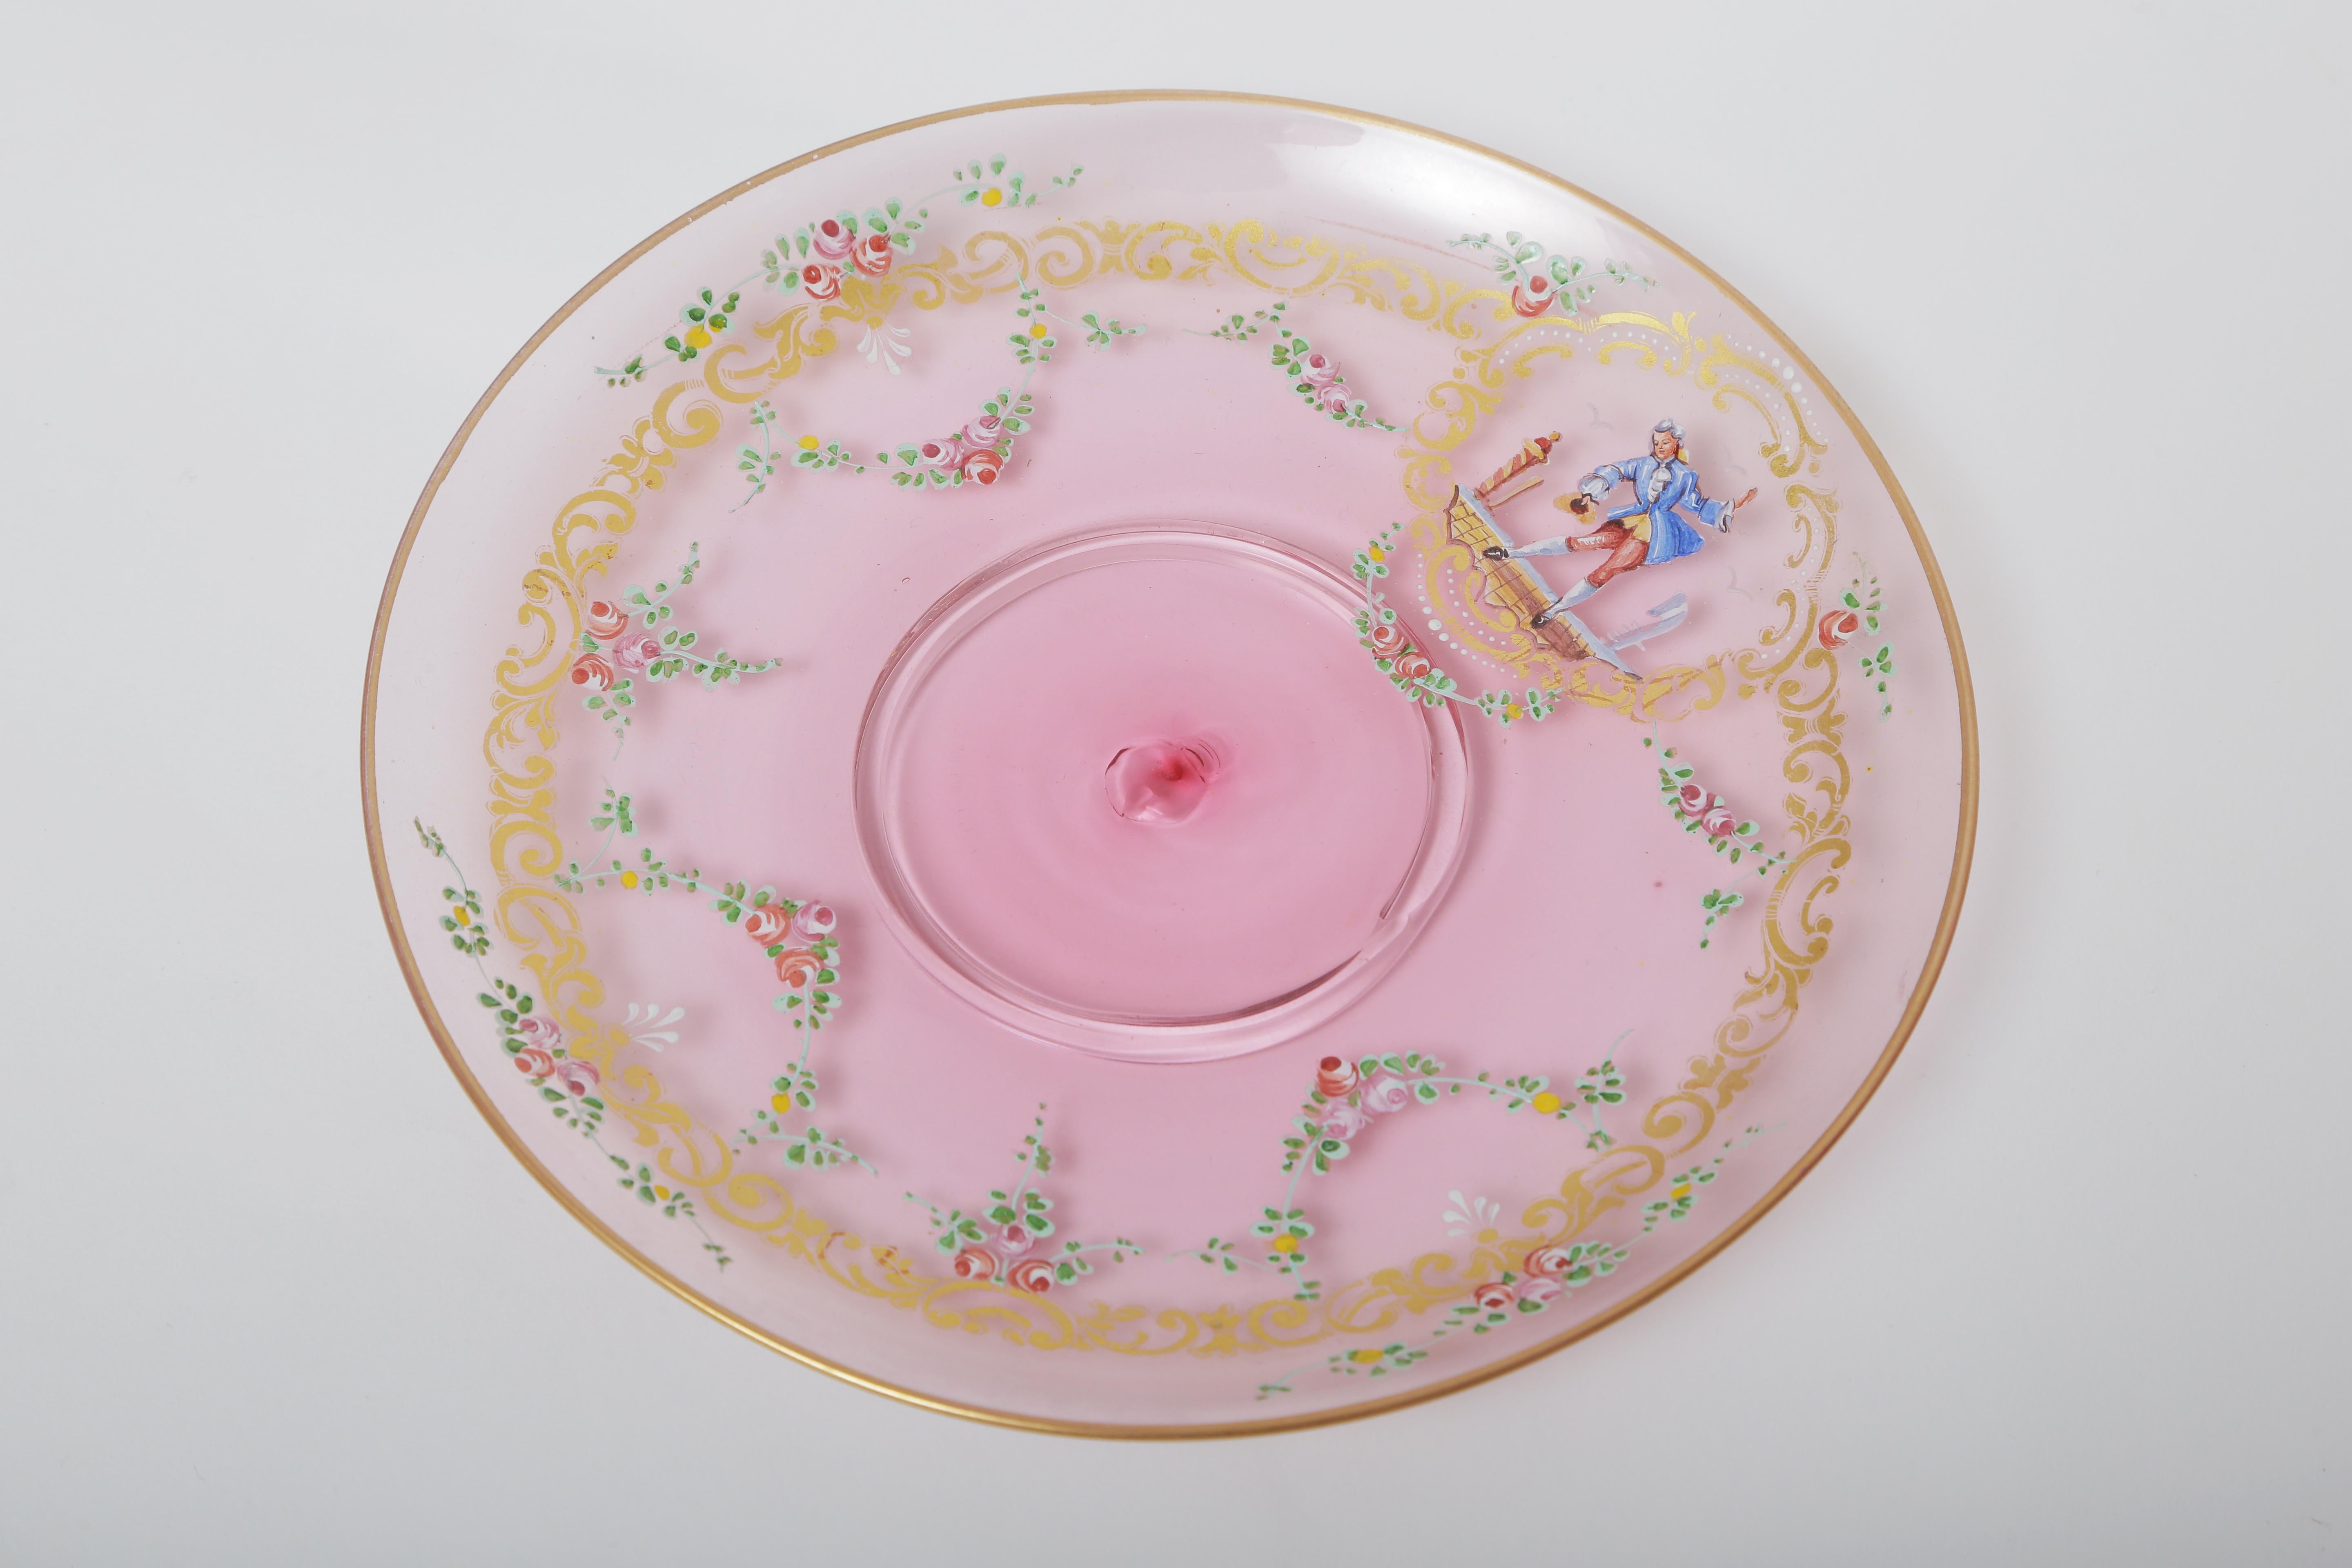 Belle Époque 22 Pieces Antique Venetian Glass Dessert Coupes and Plates, Pink, circa 1900